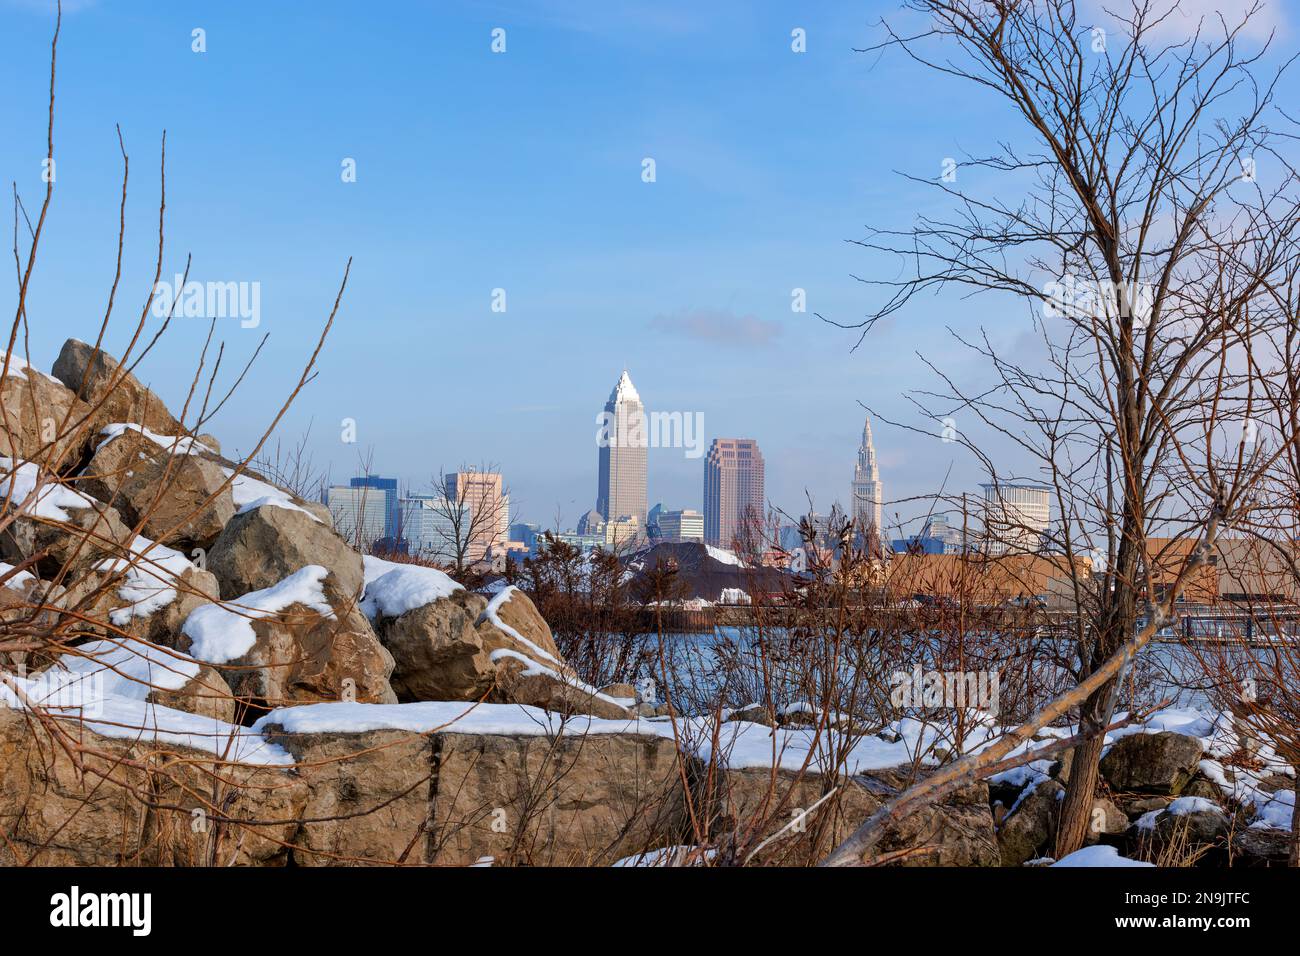 Der Edgewater Park in Cleveland, Ohio, bietet einen schönen Blick auf die Skyline von Clevelands, die sich hinter Felsen und Sträuchern am winterlichen Ufer des Lake Erie erstreckt. Stockfoto